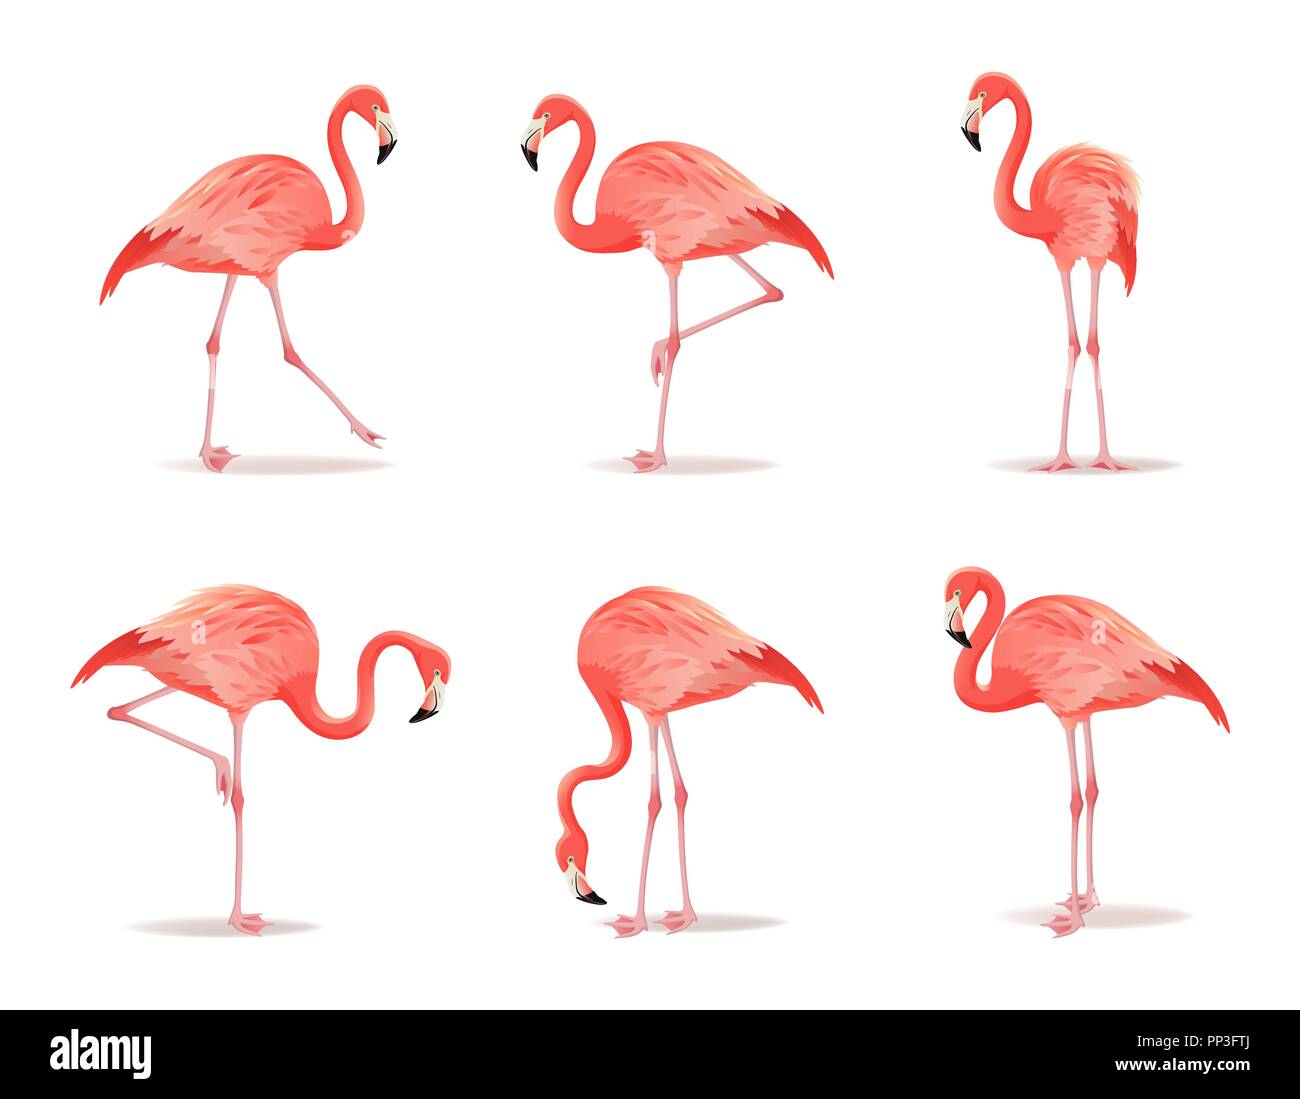 Rot und rosa Flamingo, Vector Illustration. Exotischen Vogel in unterschiedlichen Posen dekorative Gestaltungselemente Sammlung. Flamingo isoliert auf weißem Hintergrund Stock Vektor